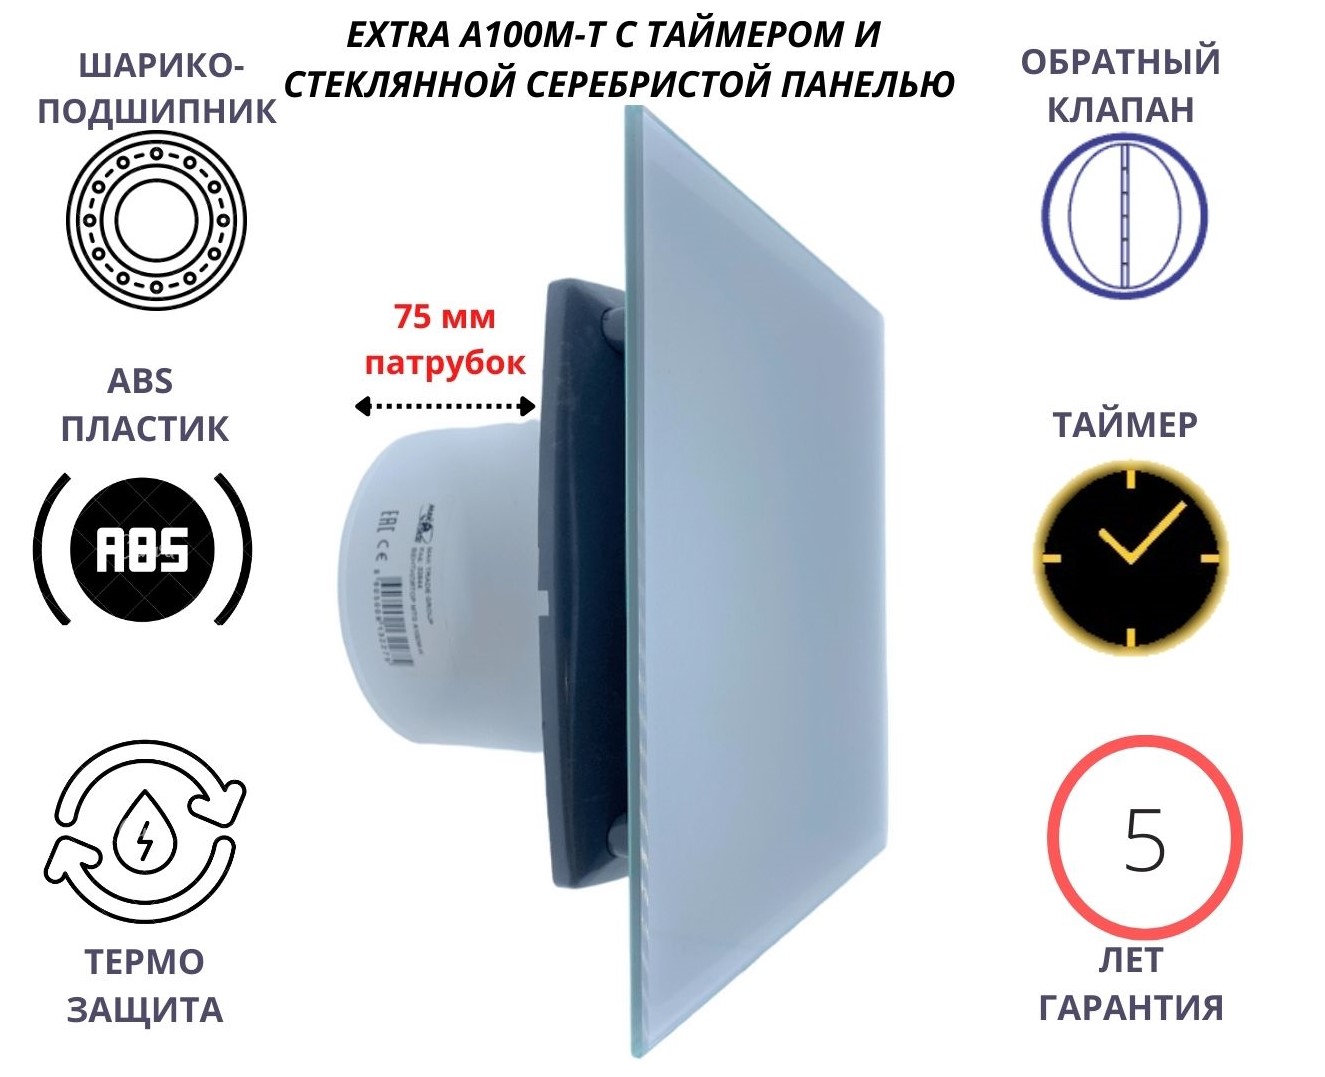 Вентилятор с таймером, D100мм, со стеклянной серебристой панелью EXTRA A100М-T, Сербия вентилятор с таймером d100мм со стеклянной белой панелью extra a100м t сербия